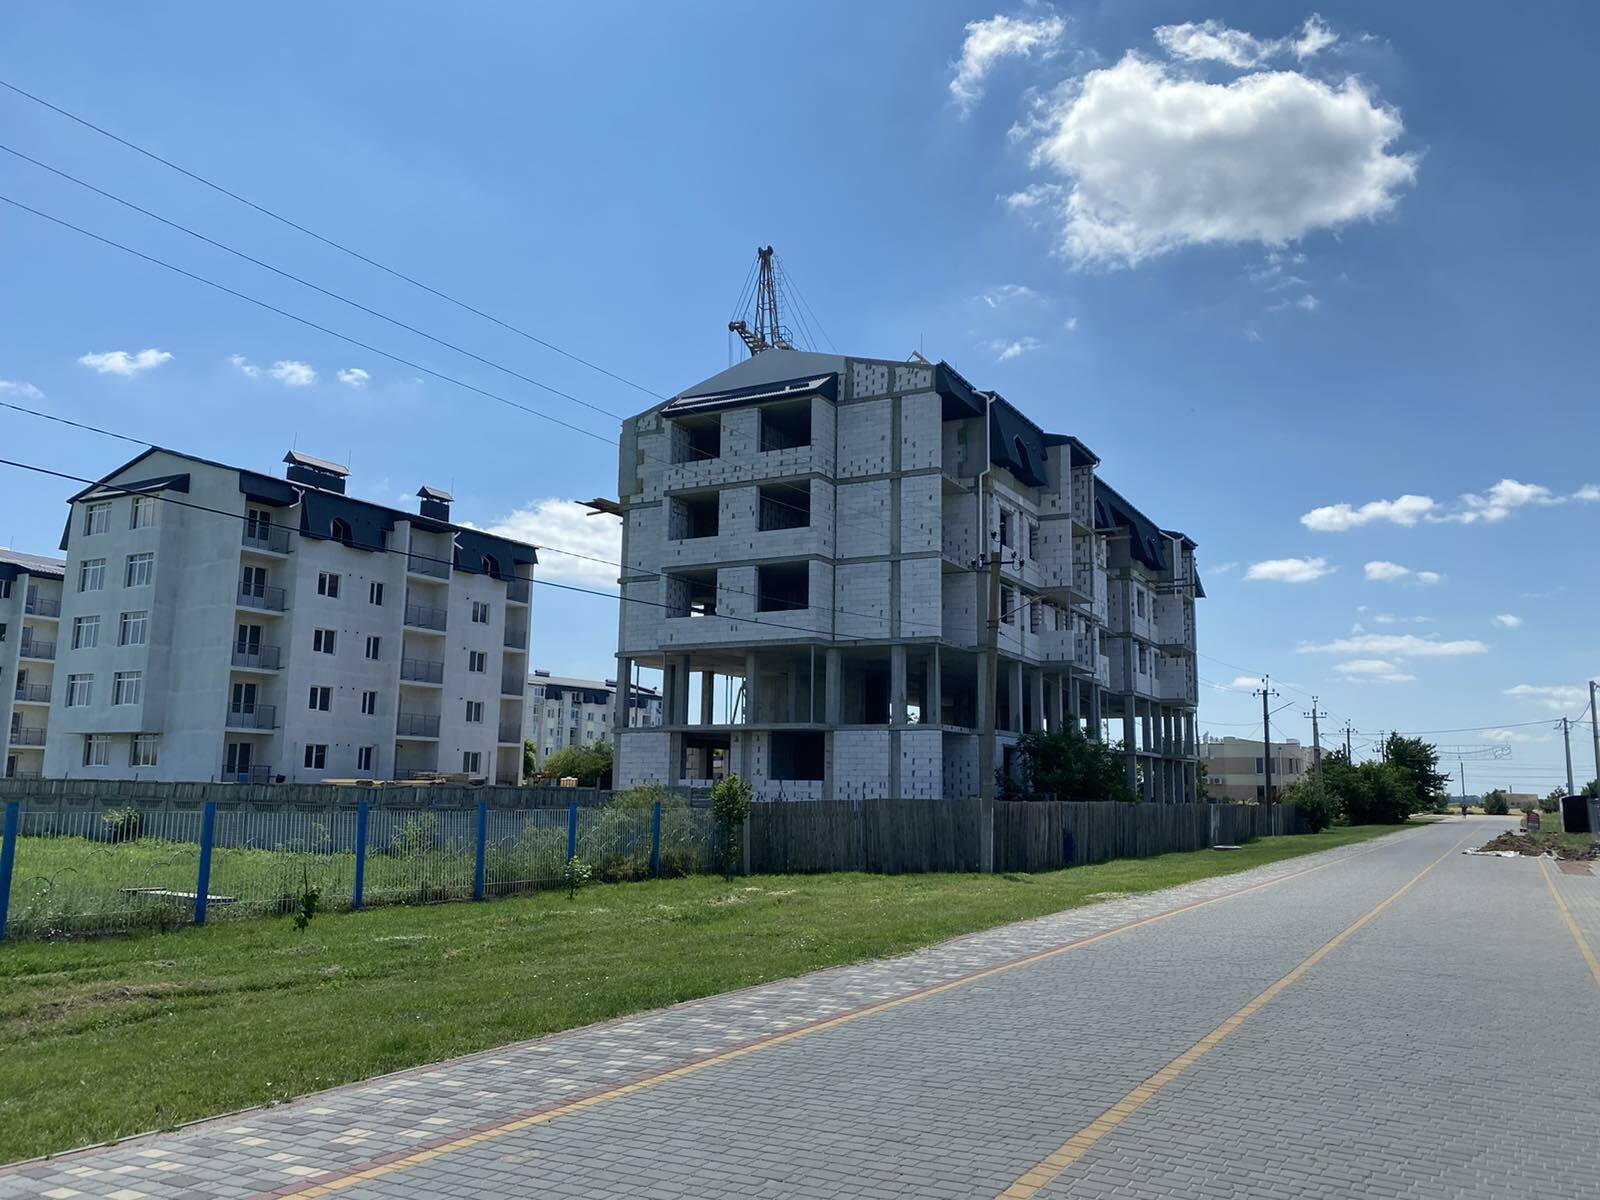 Хід будівництва ЖК Новосел, черв, 2021 рік